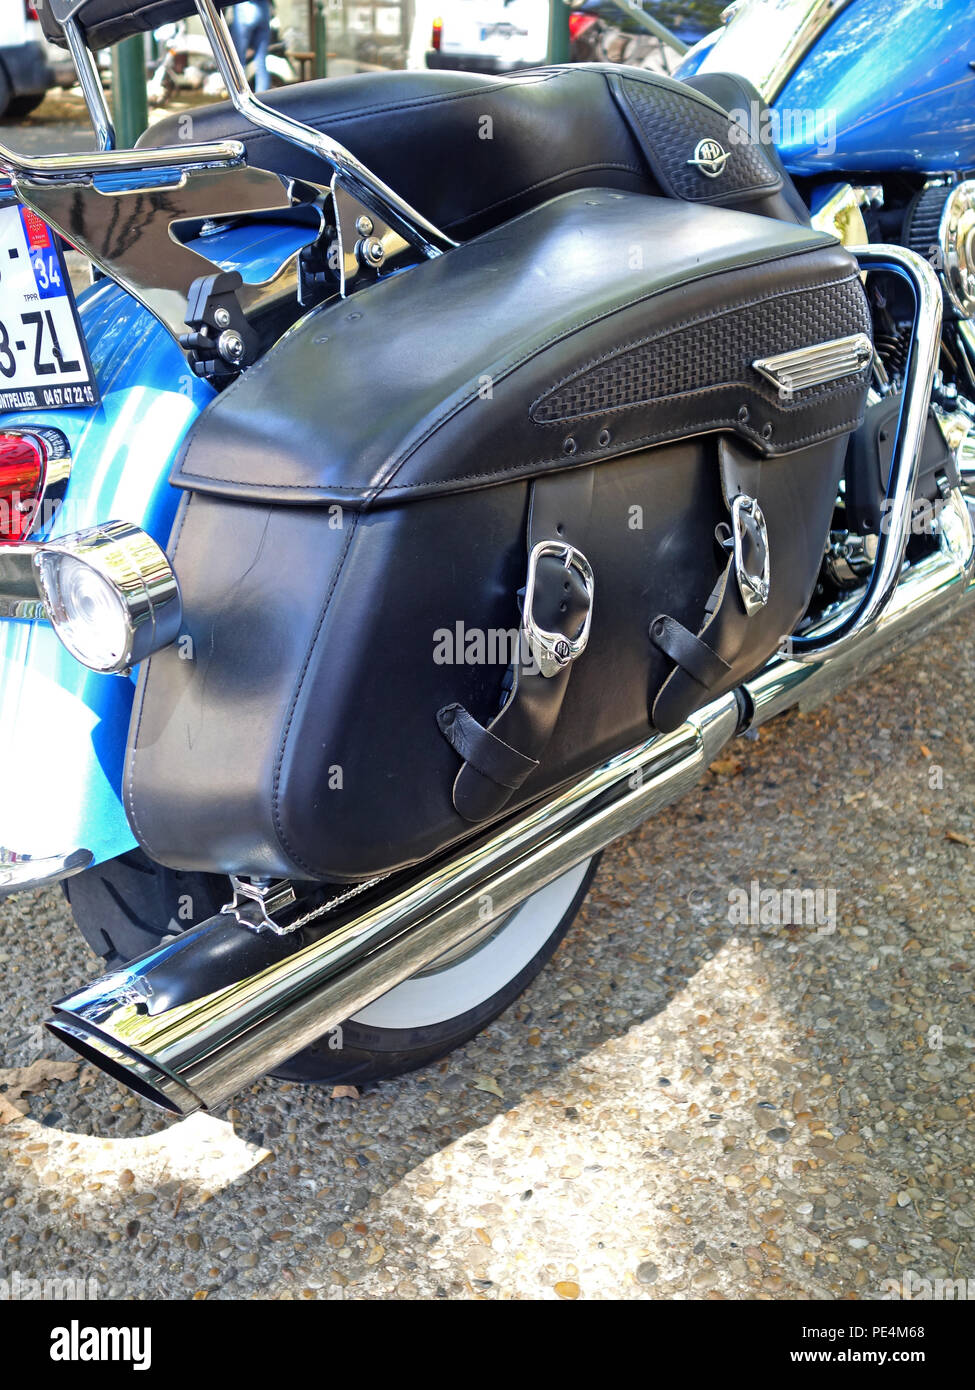 Libre vue arrière de sacoches en cuir bleu sur une moto Harley-Davidson  FLHRC Road King prises à partir d'un angle élevé Photo Stock - Alamy